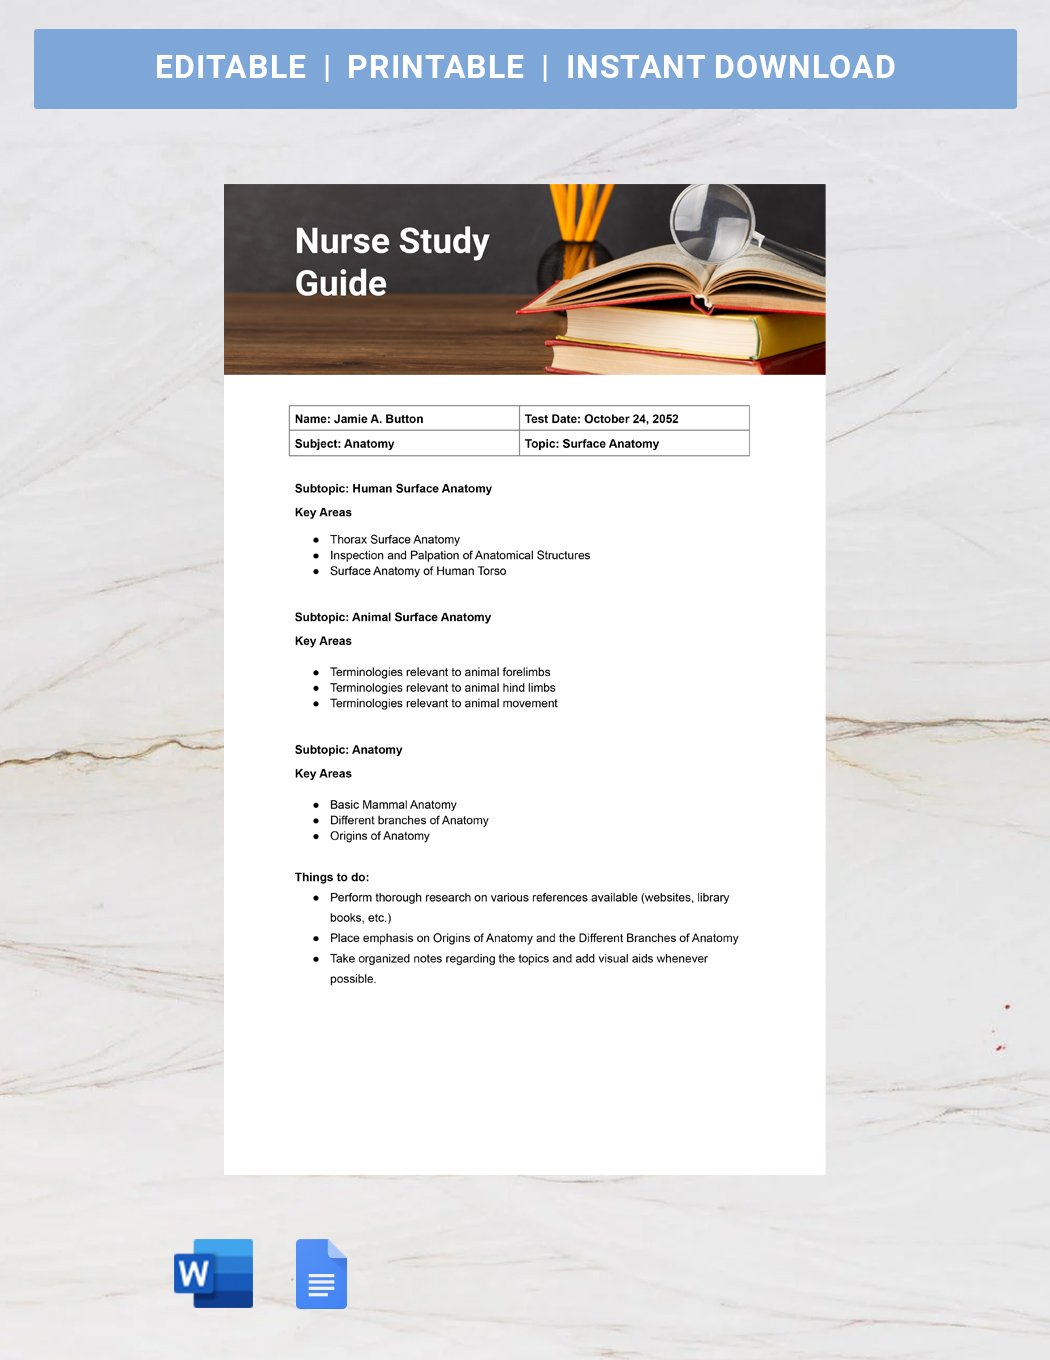 Nurse Study Guide Template